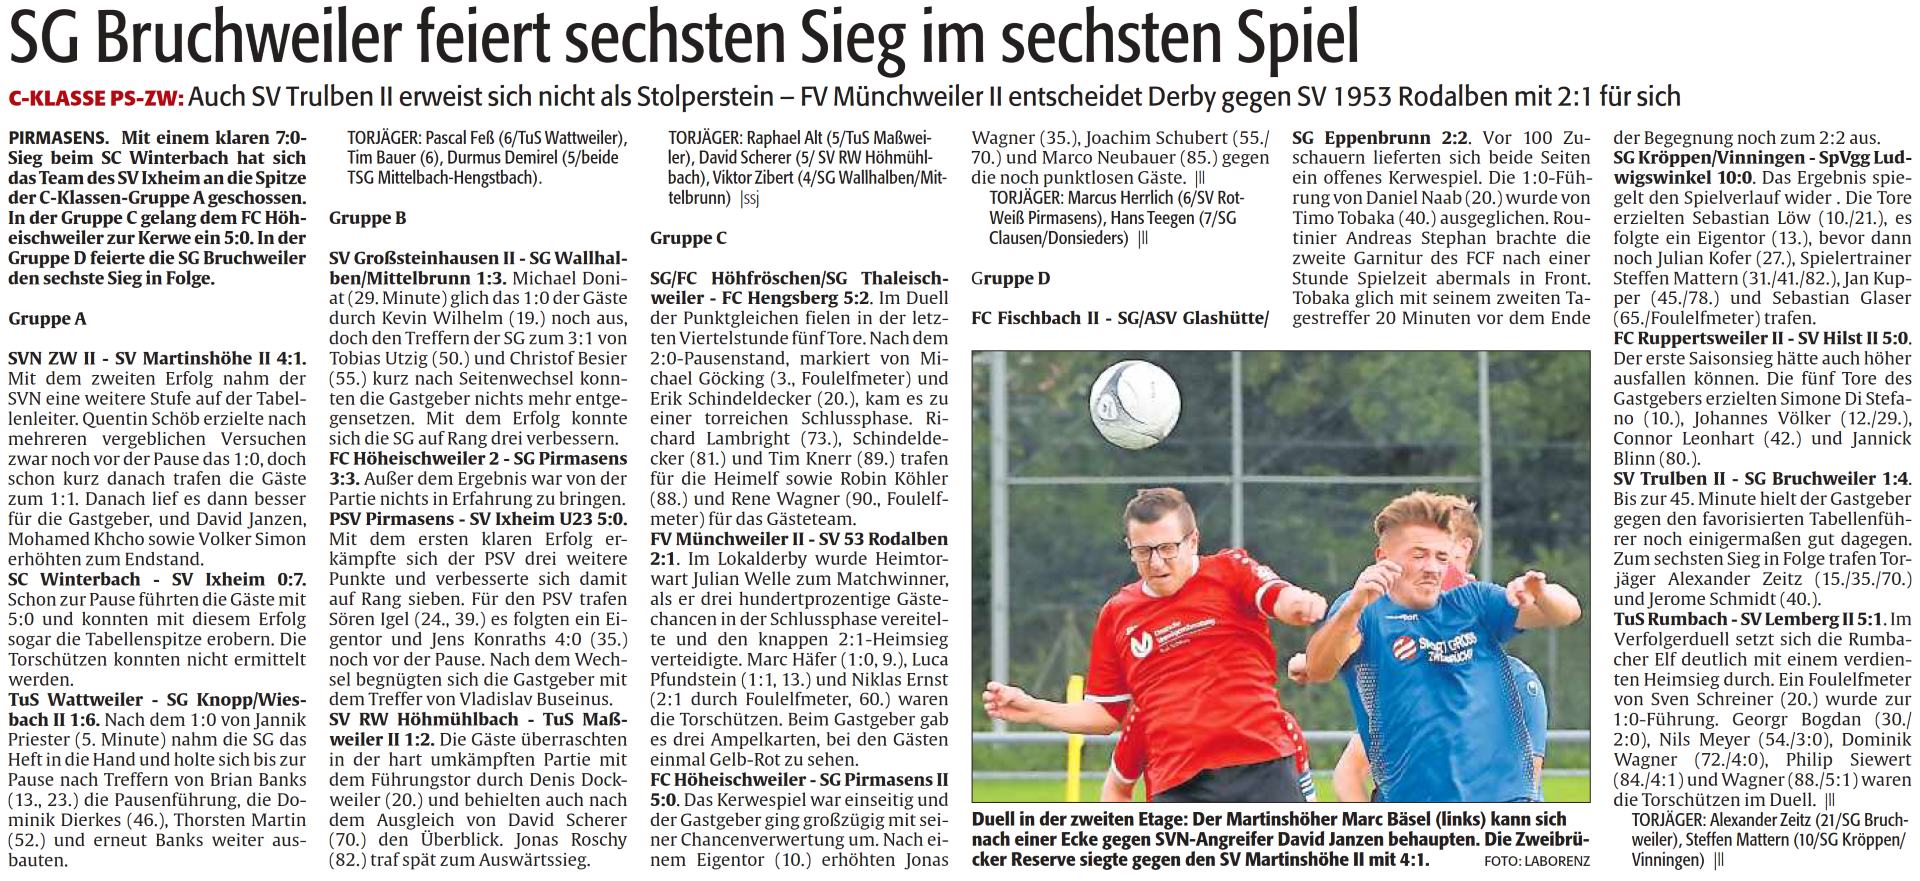 SG Bruchweiler feiert sechsten Sieg im sechsten Spiel